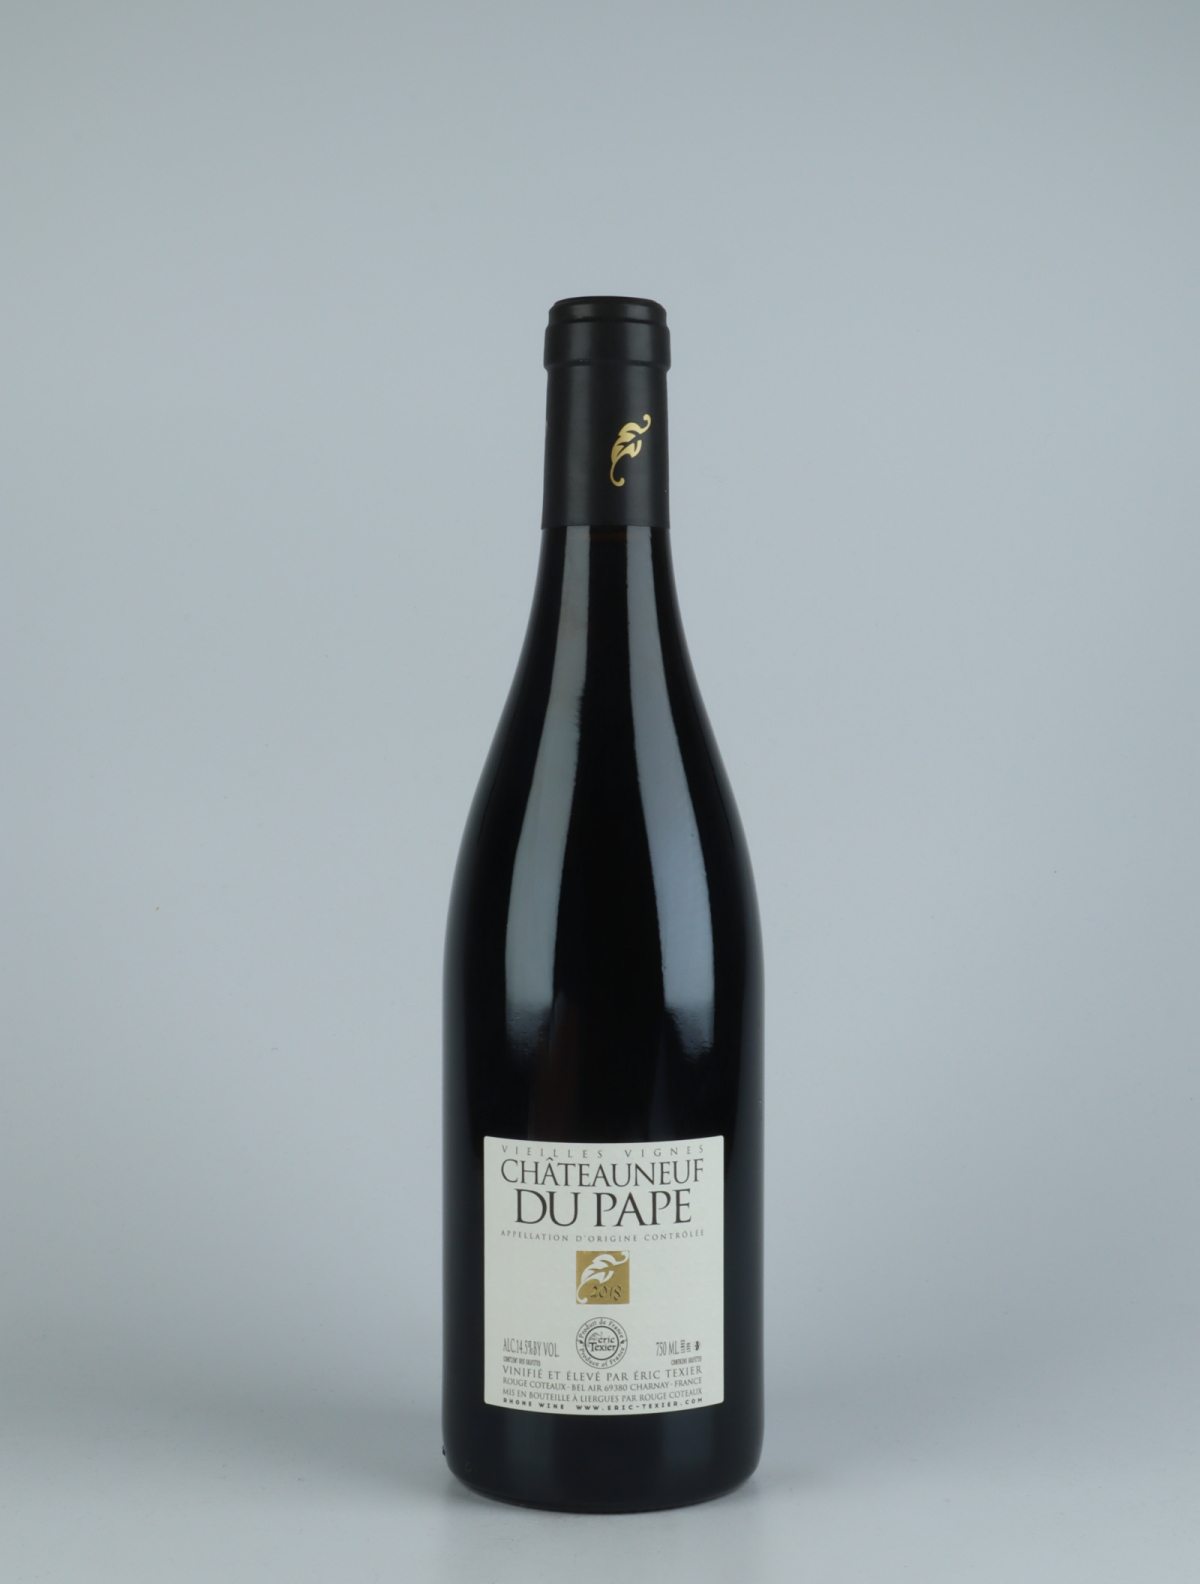 En flaske 2018 Châteauneuf-du-pape V.V. Rødvin fra Eric Texier, Rhône i Frankrig